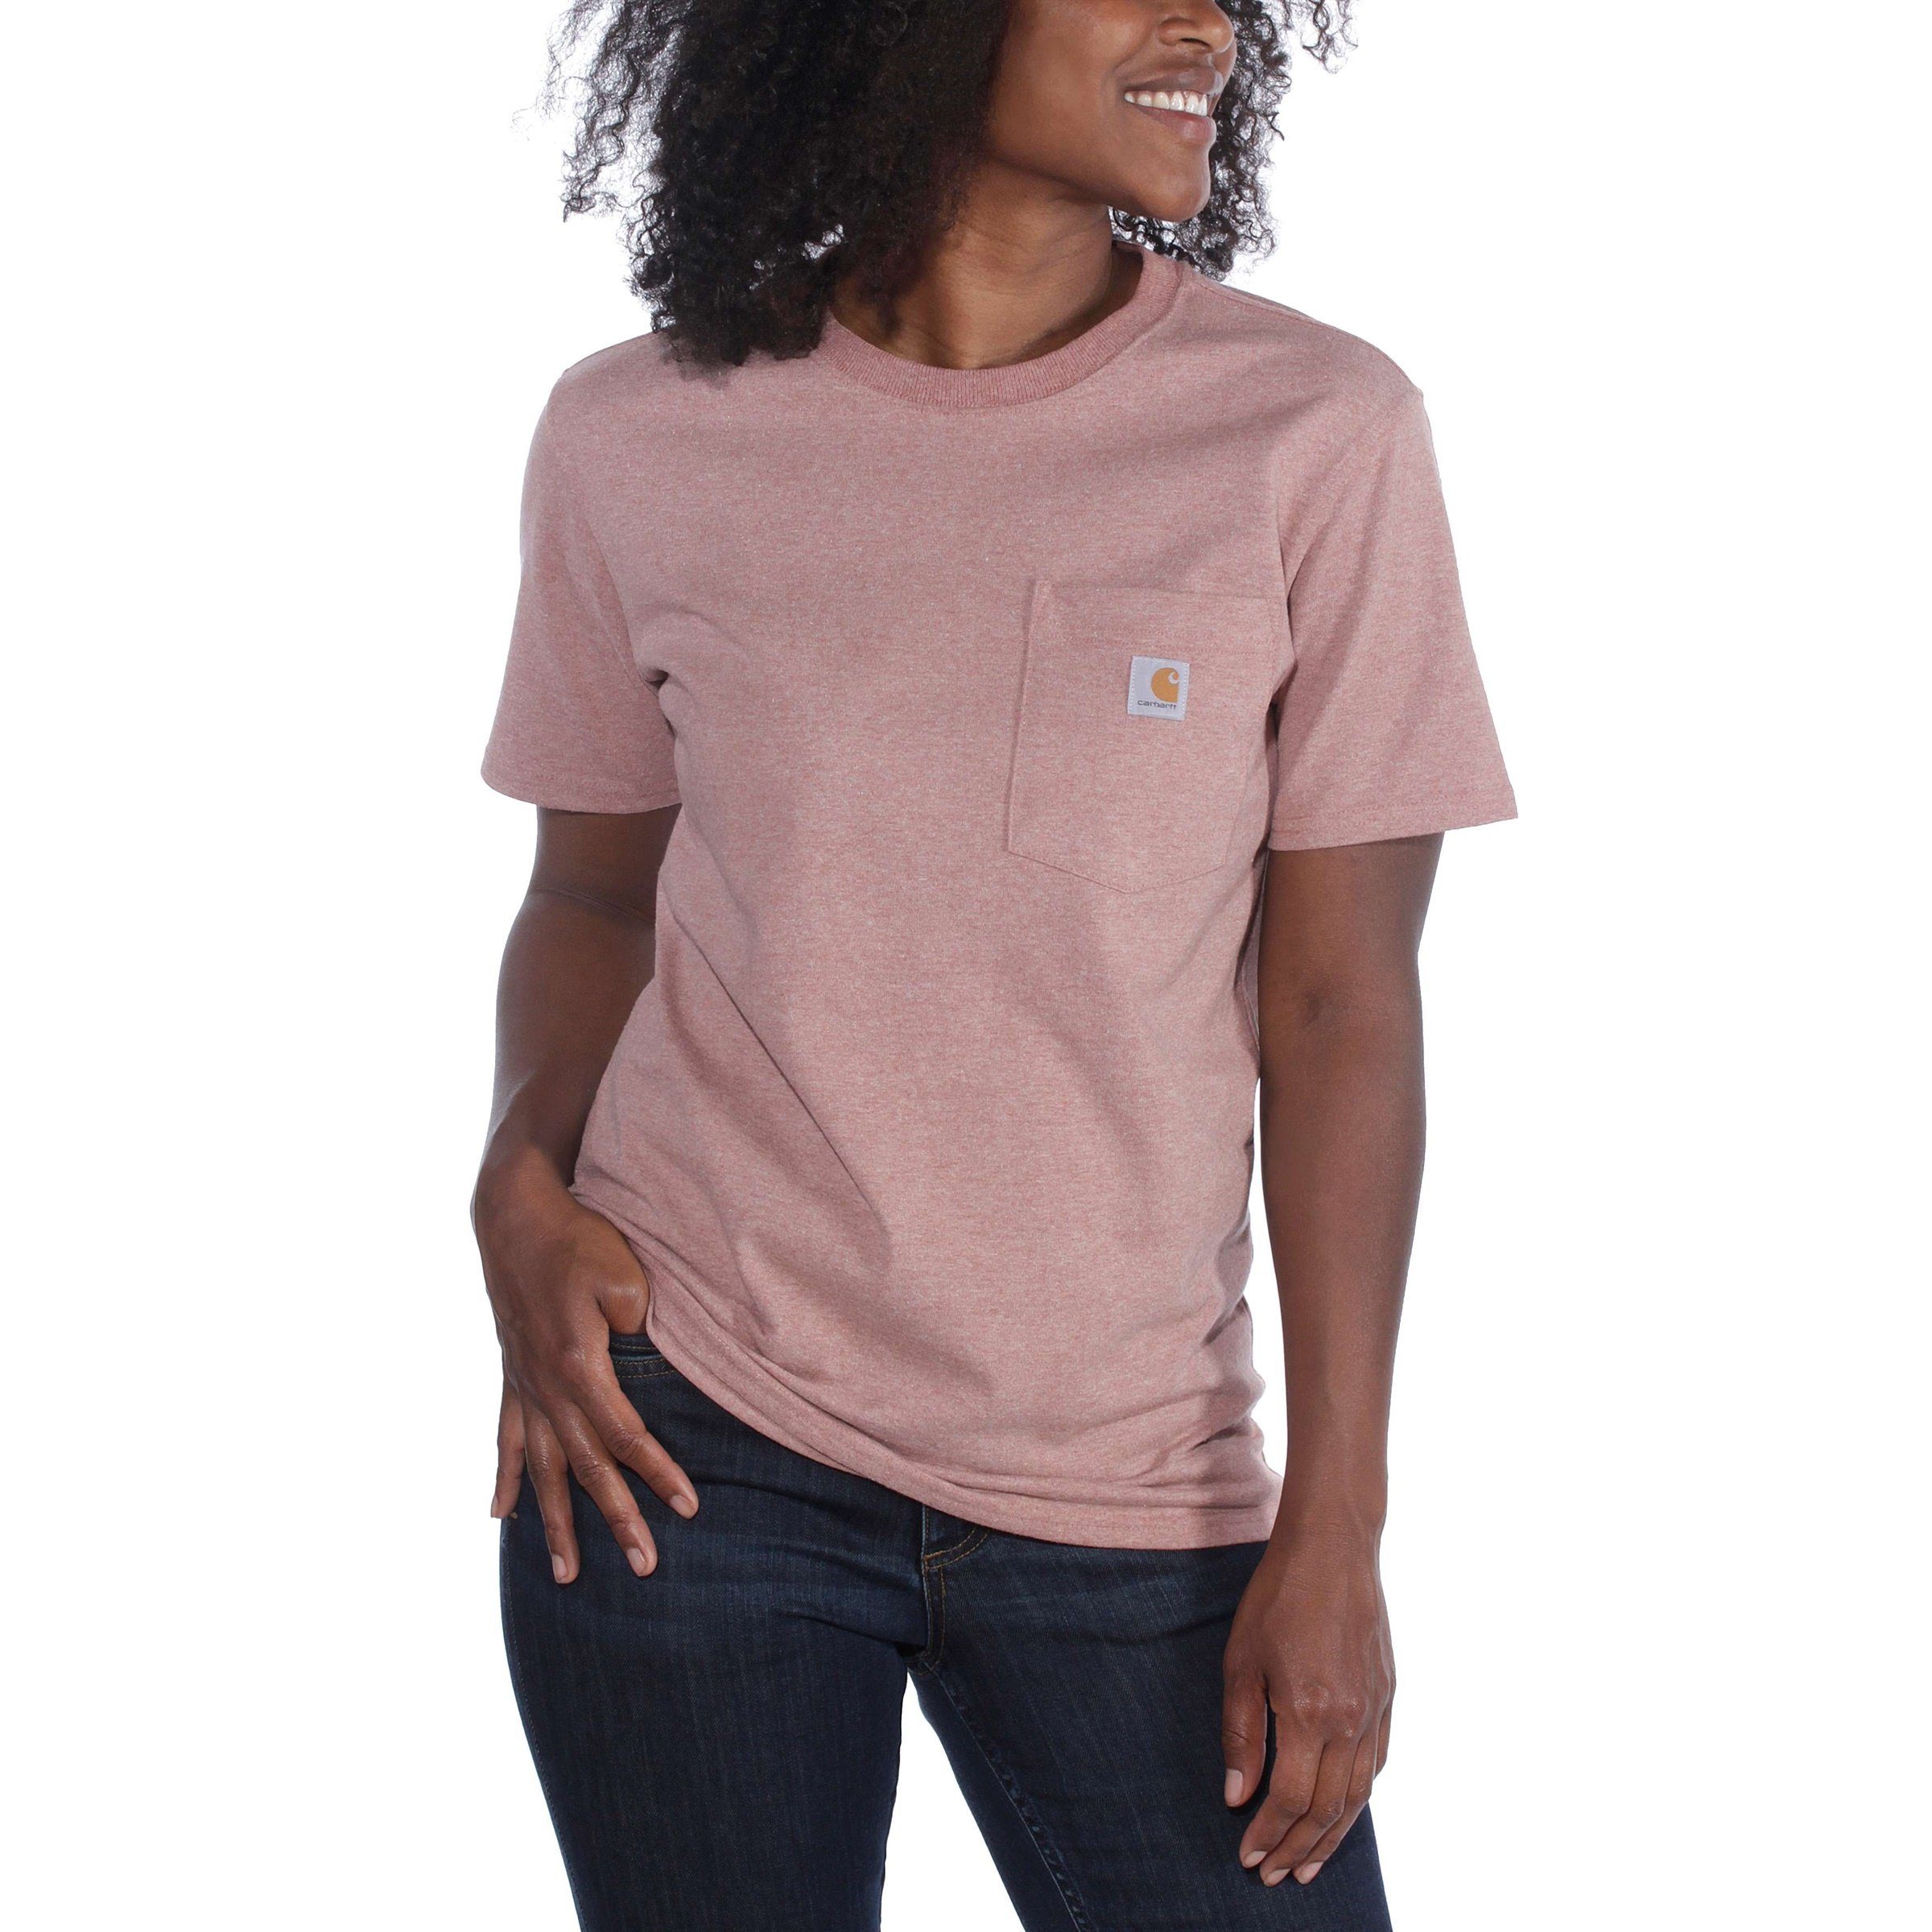 T-Shirt Damen T-Shirt heather Carhartt Fit Heavyweight currant Carhartt Short-Sleeve Adult Loose Pocket